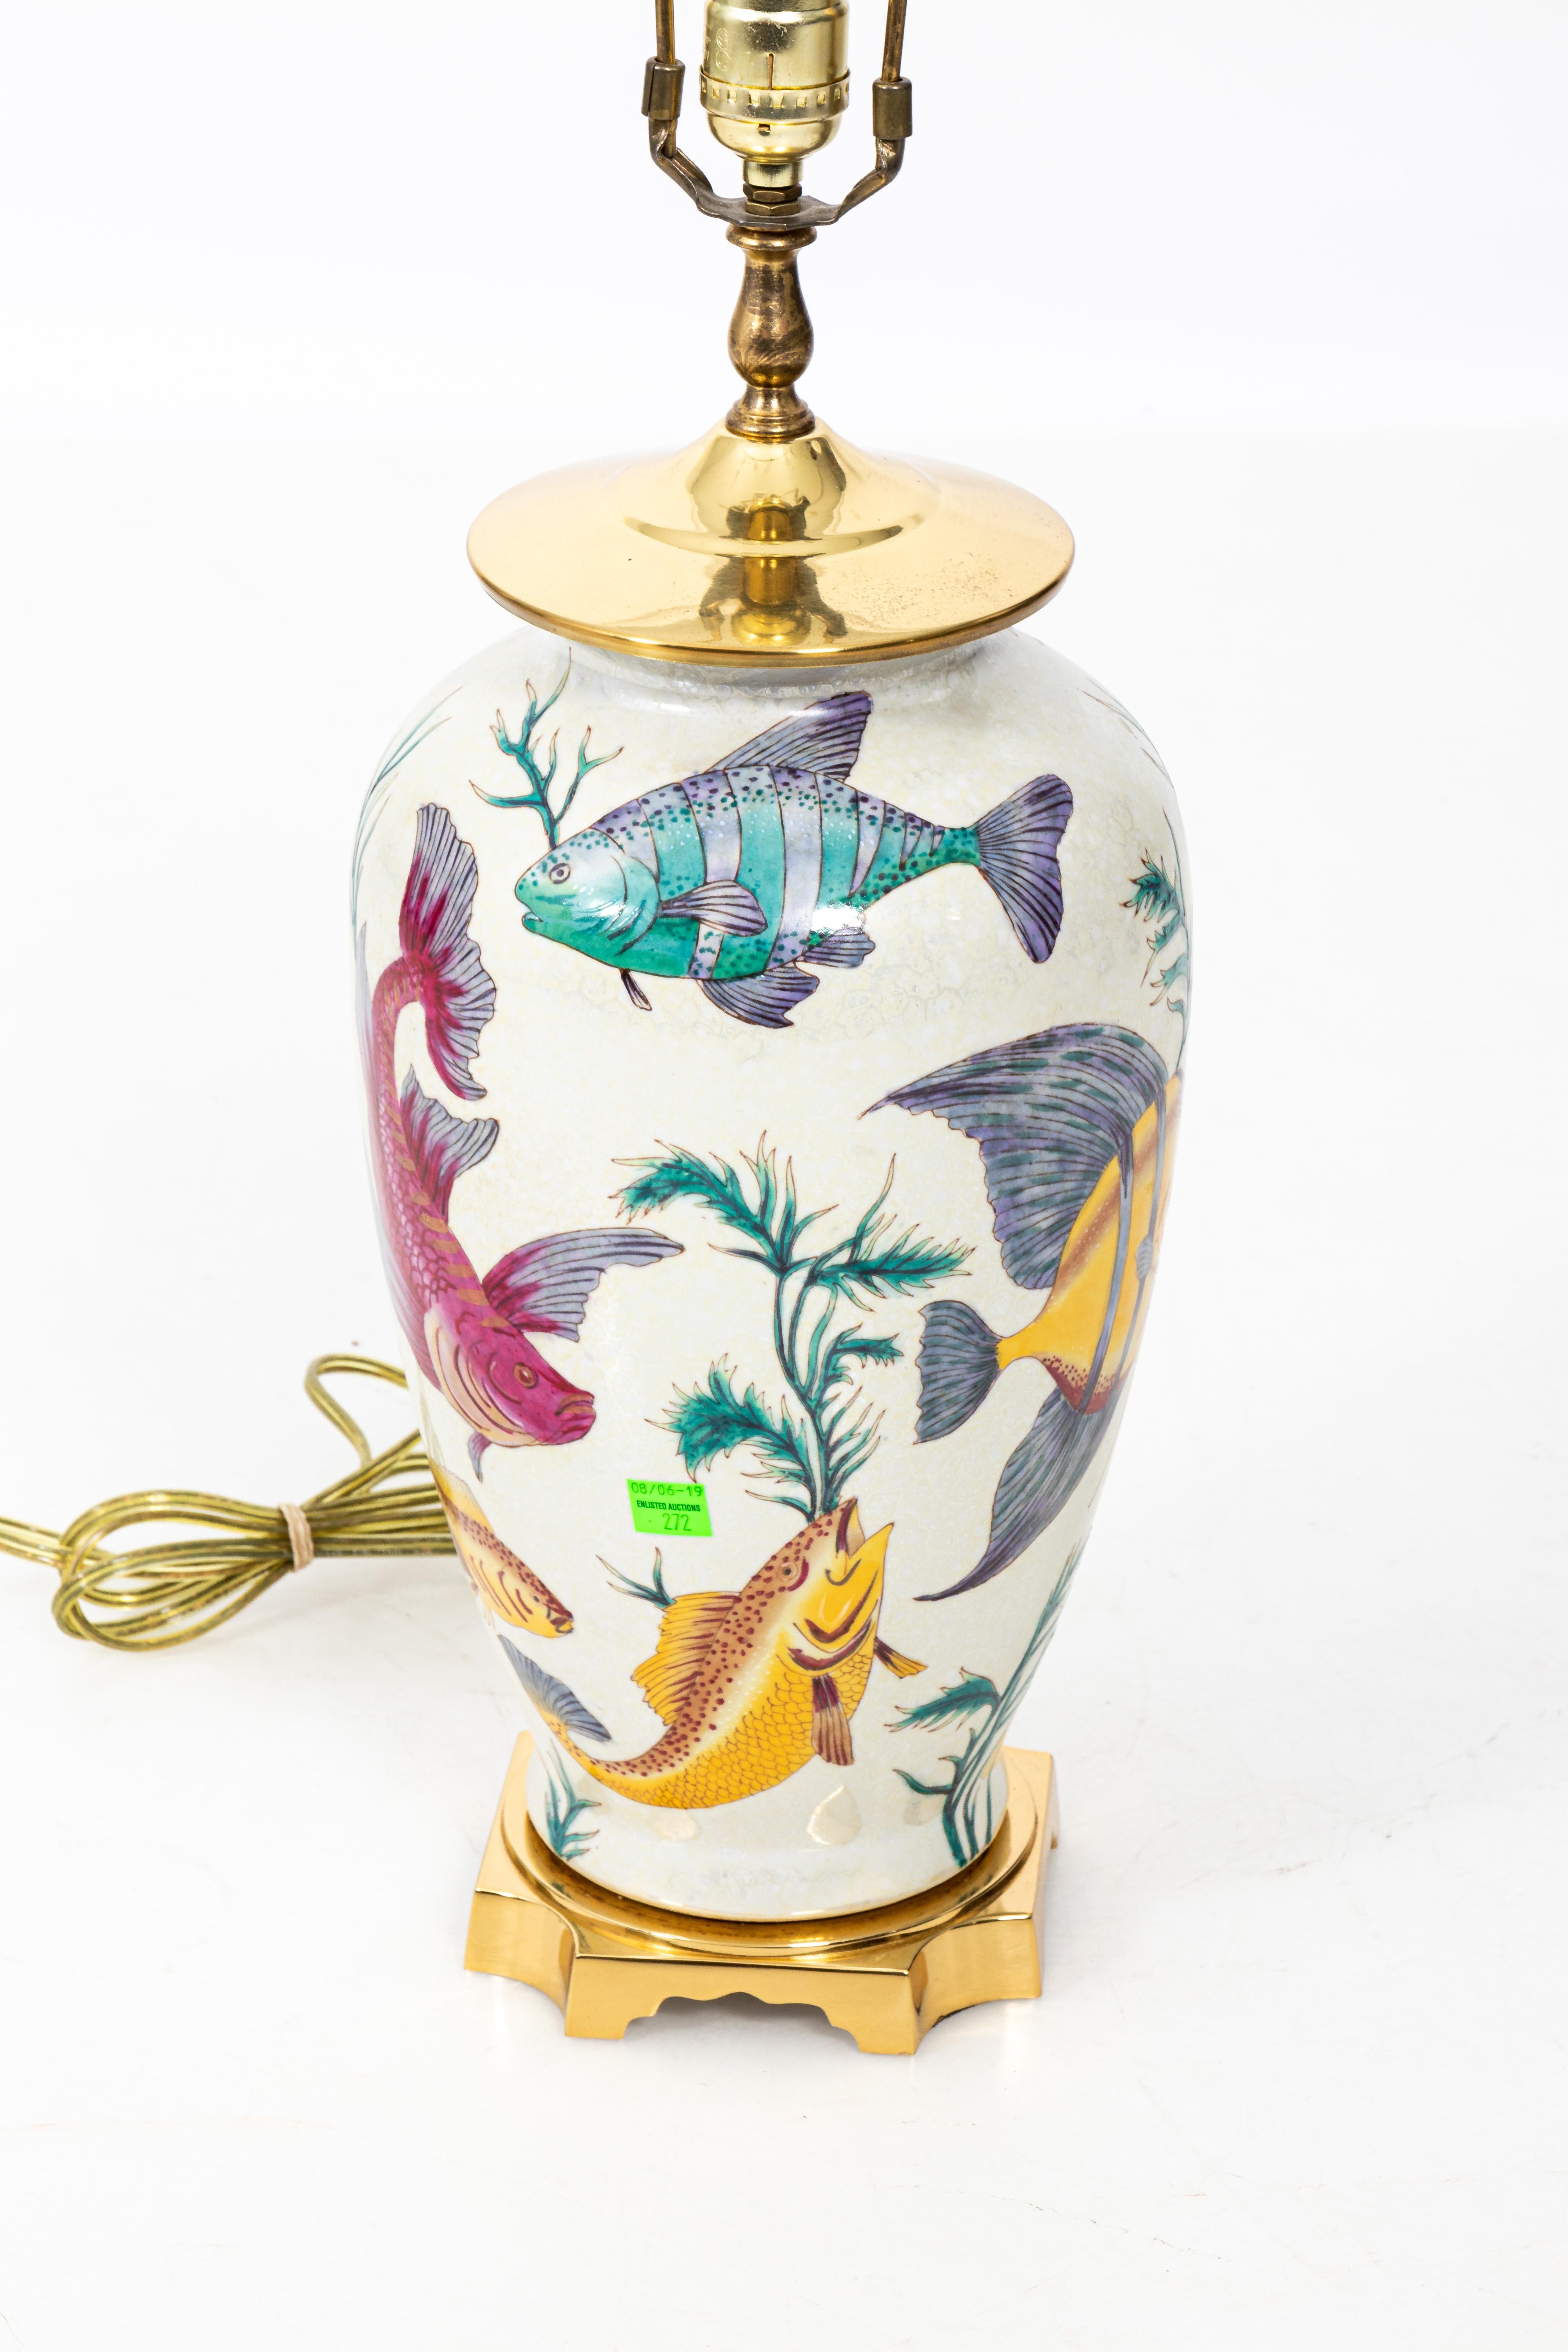 Pair of Vintage Porcelain Crackle Glaze Fish Motif Lamps 1